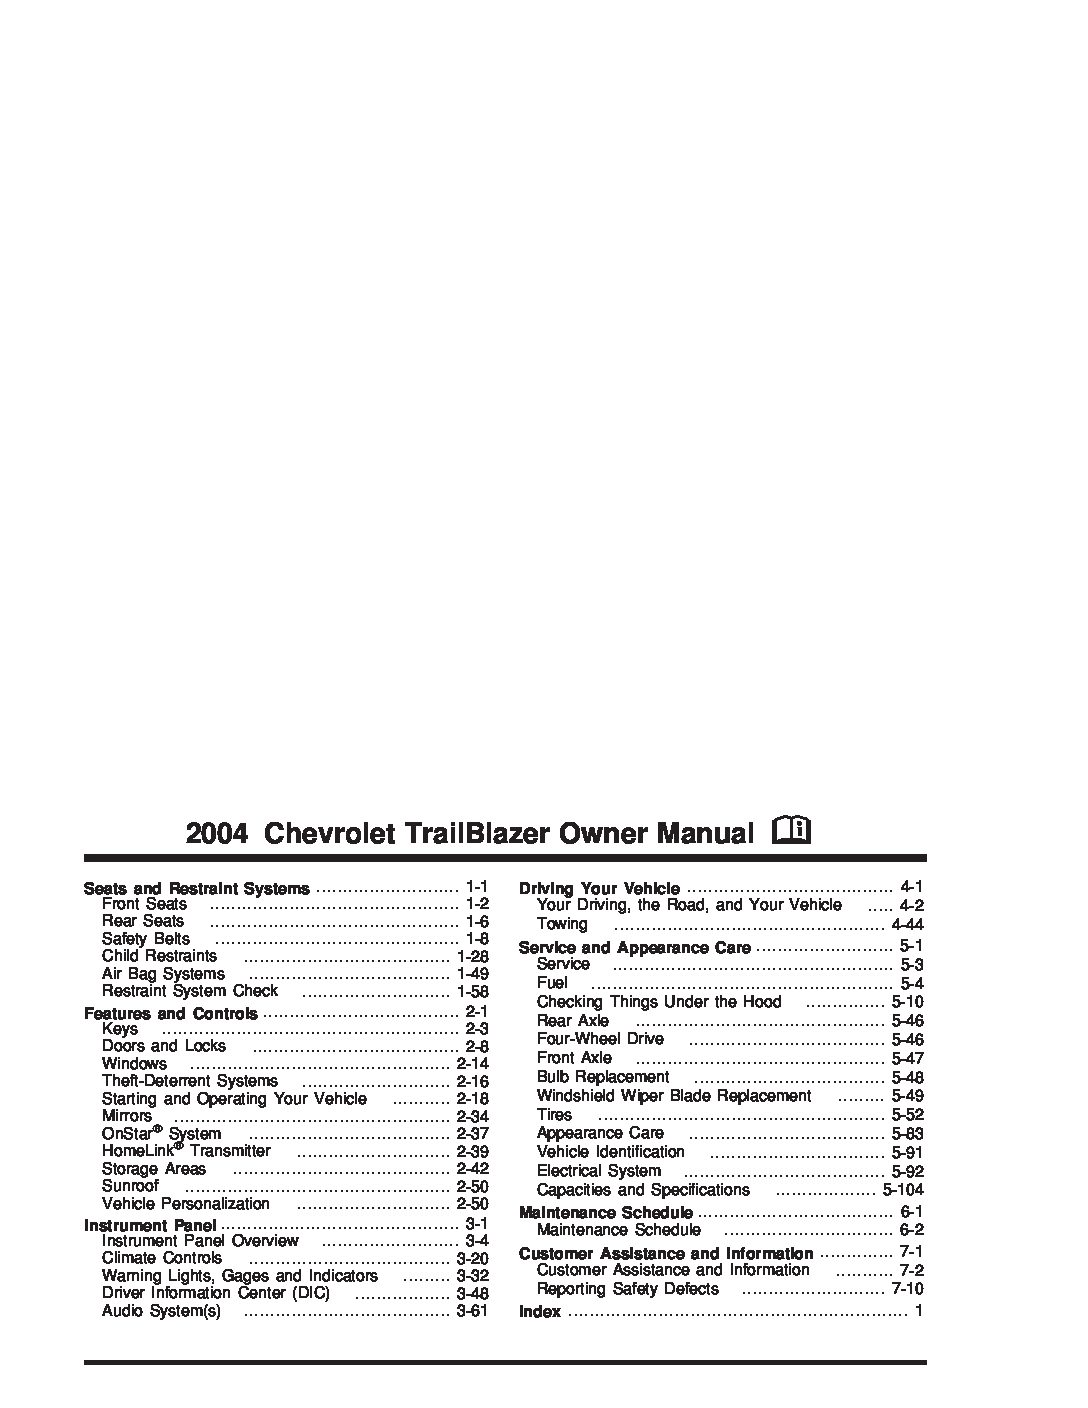 trailblazer repair manual pdf download